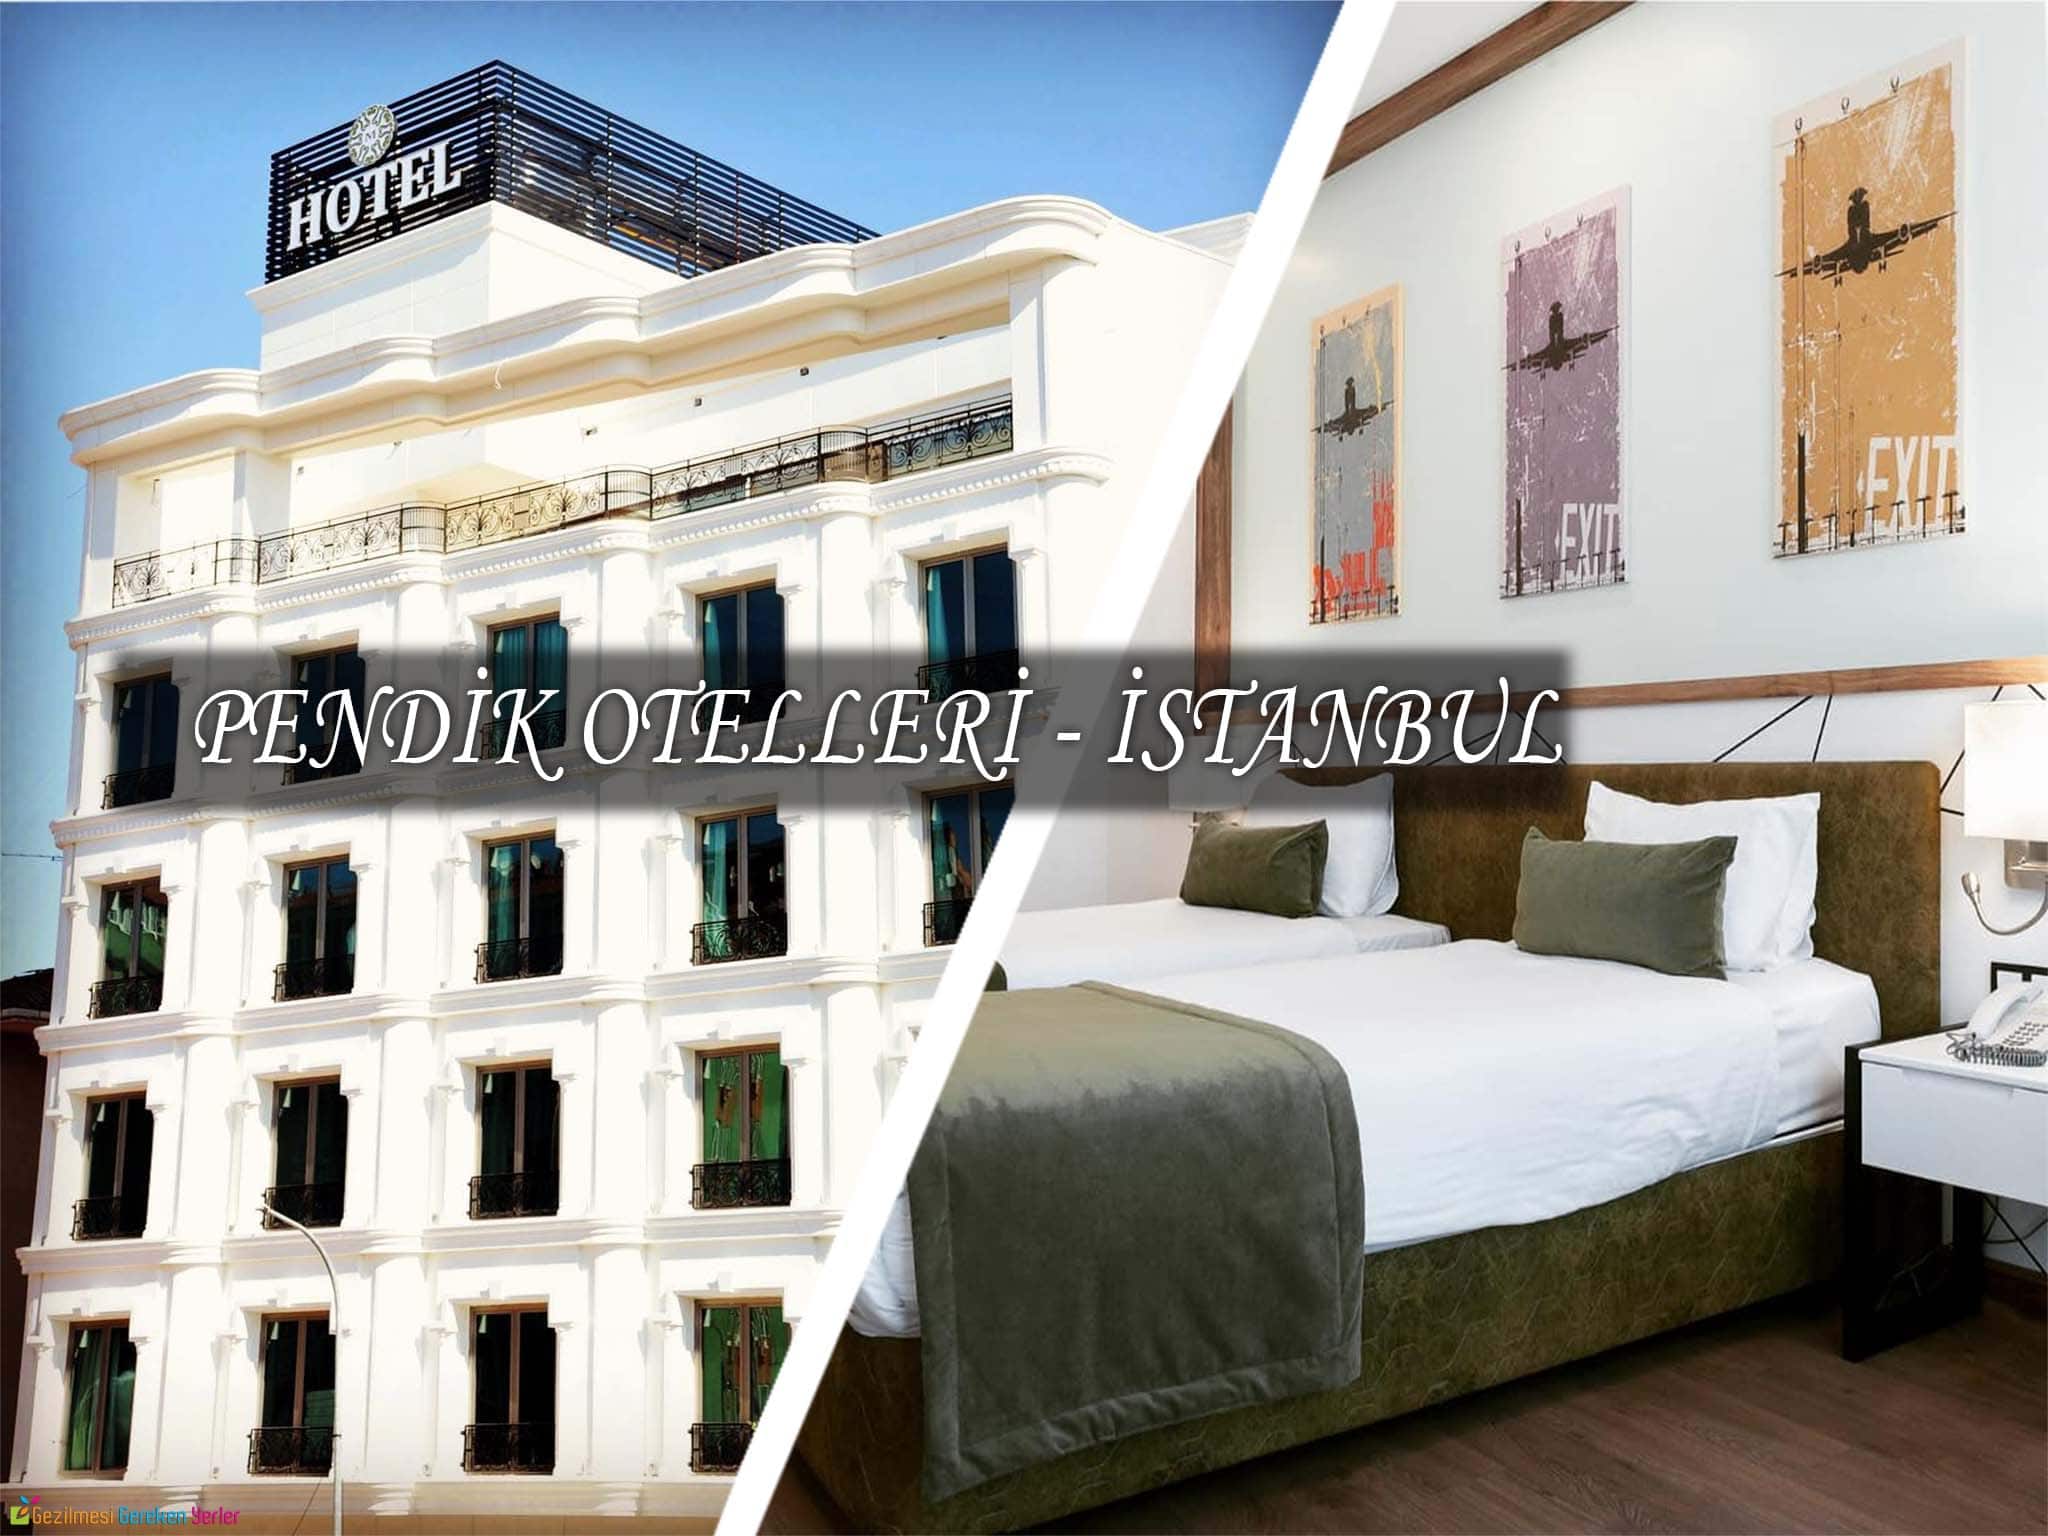 pendik otelleri istanbul daki en iyi 10 otelin fiyatlari